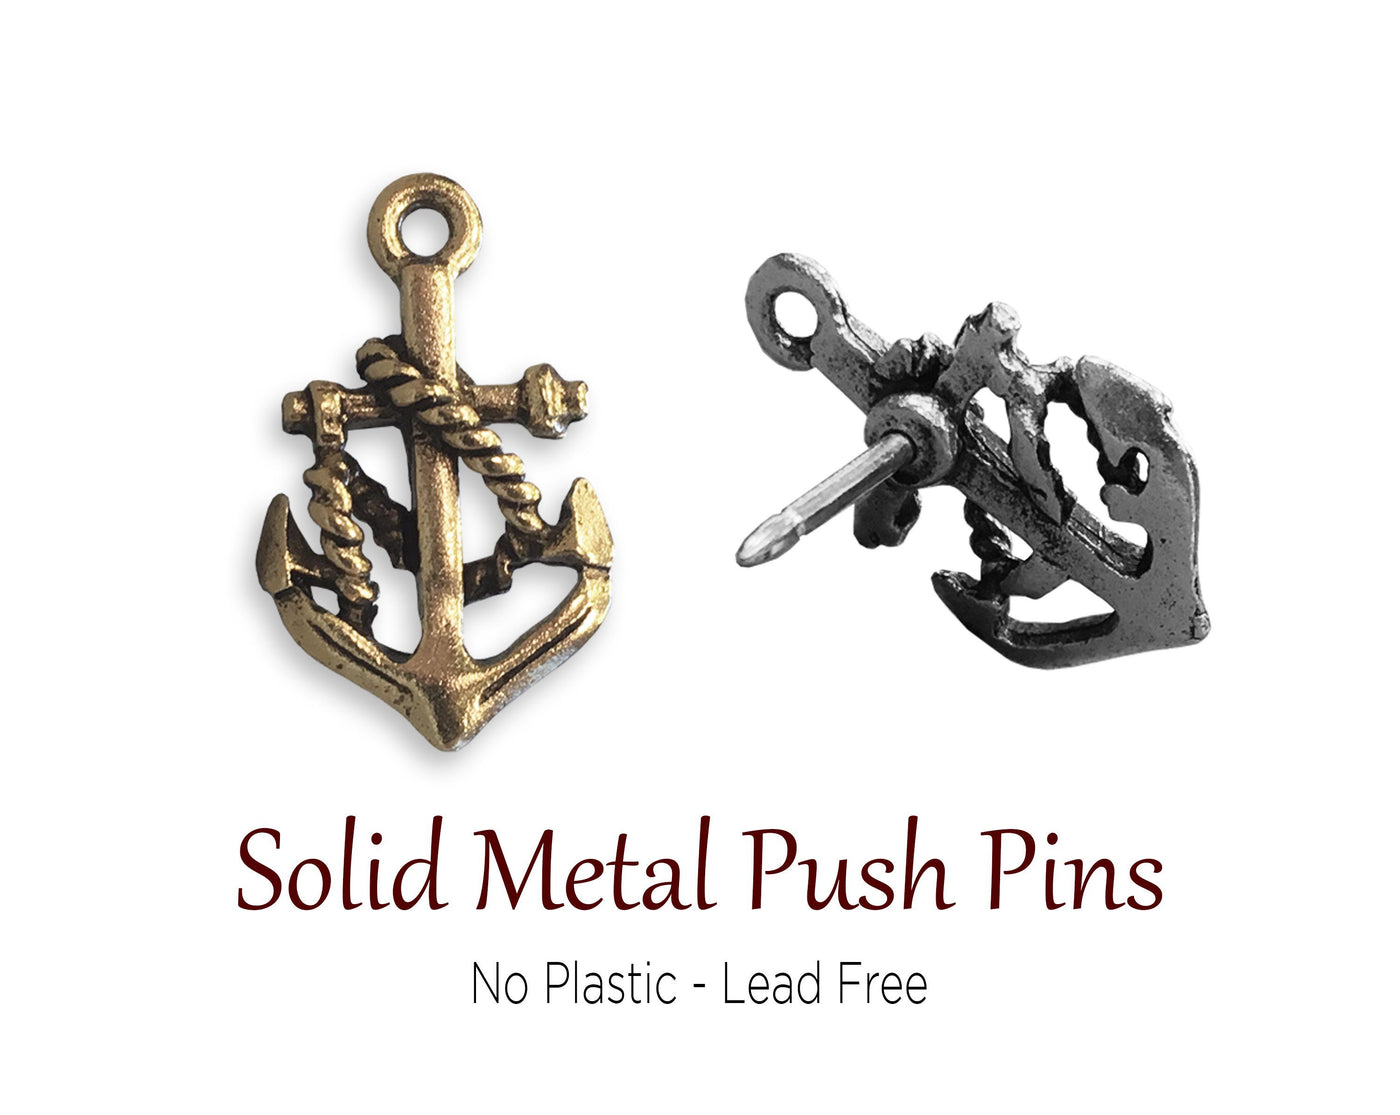 Push Pins - Anchor Push Pins